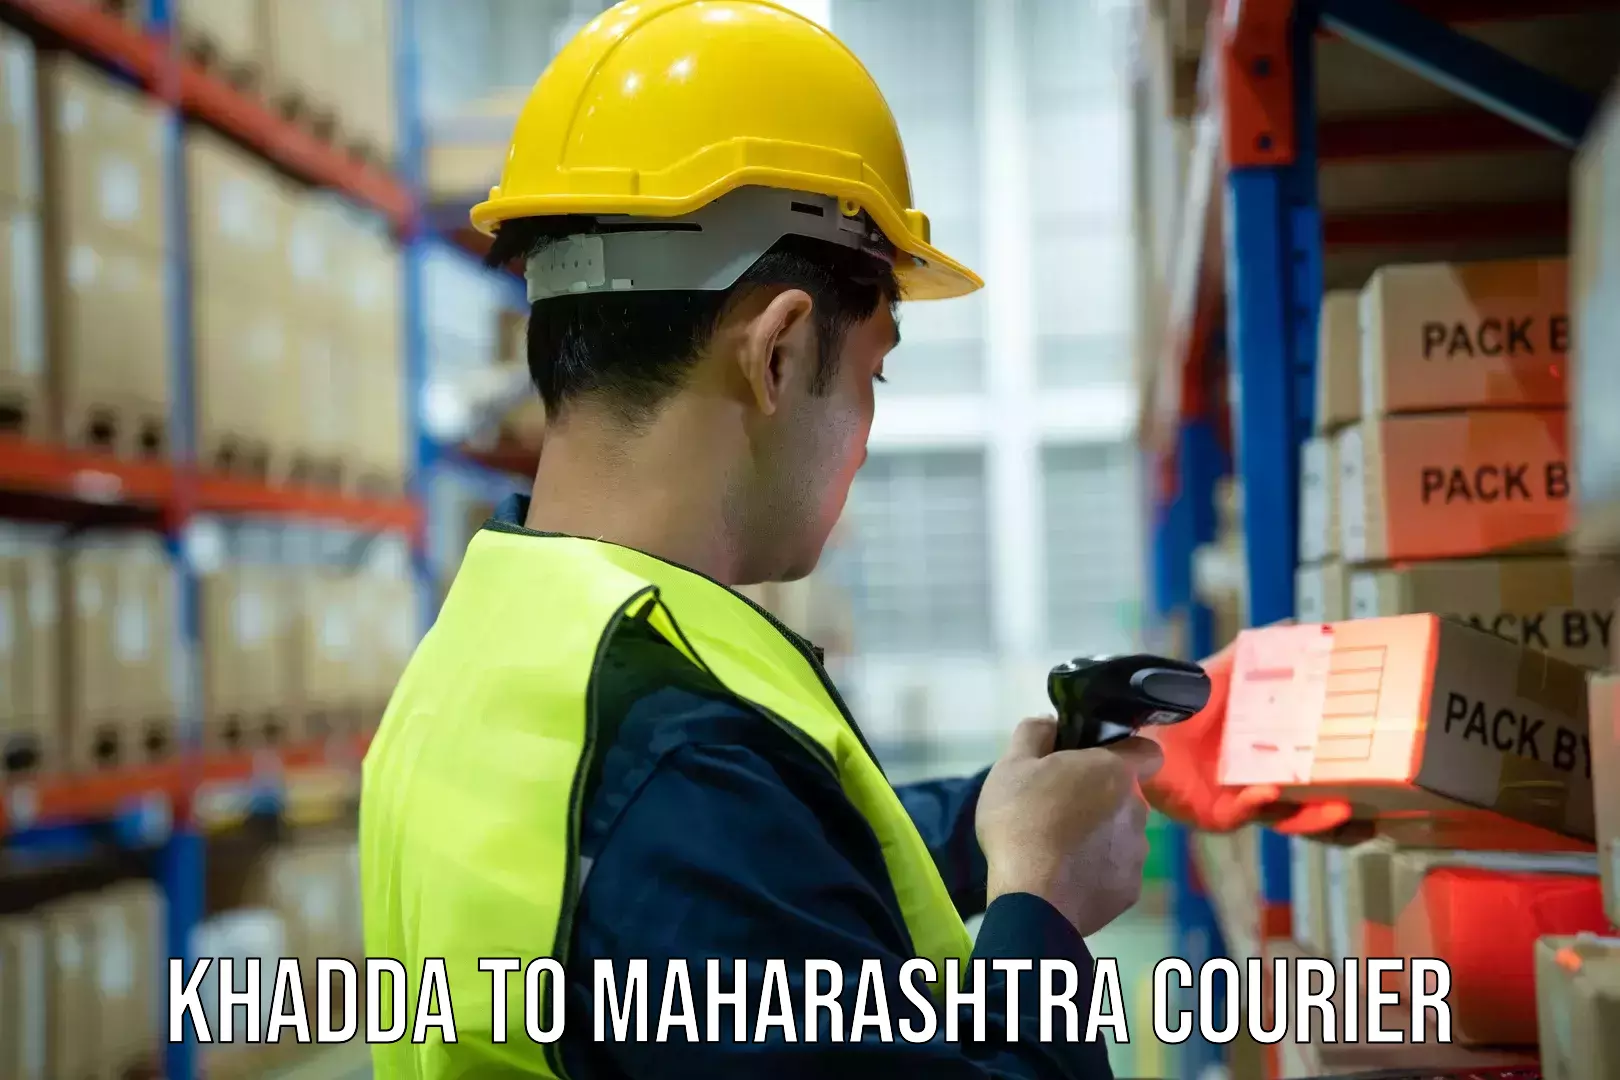 Quality courier partnerships Khadda to Maharashtra